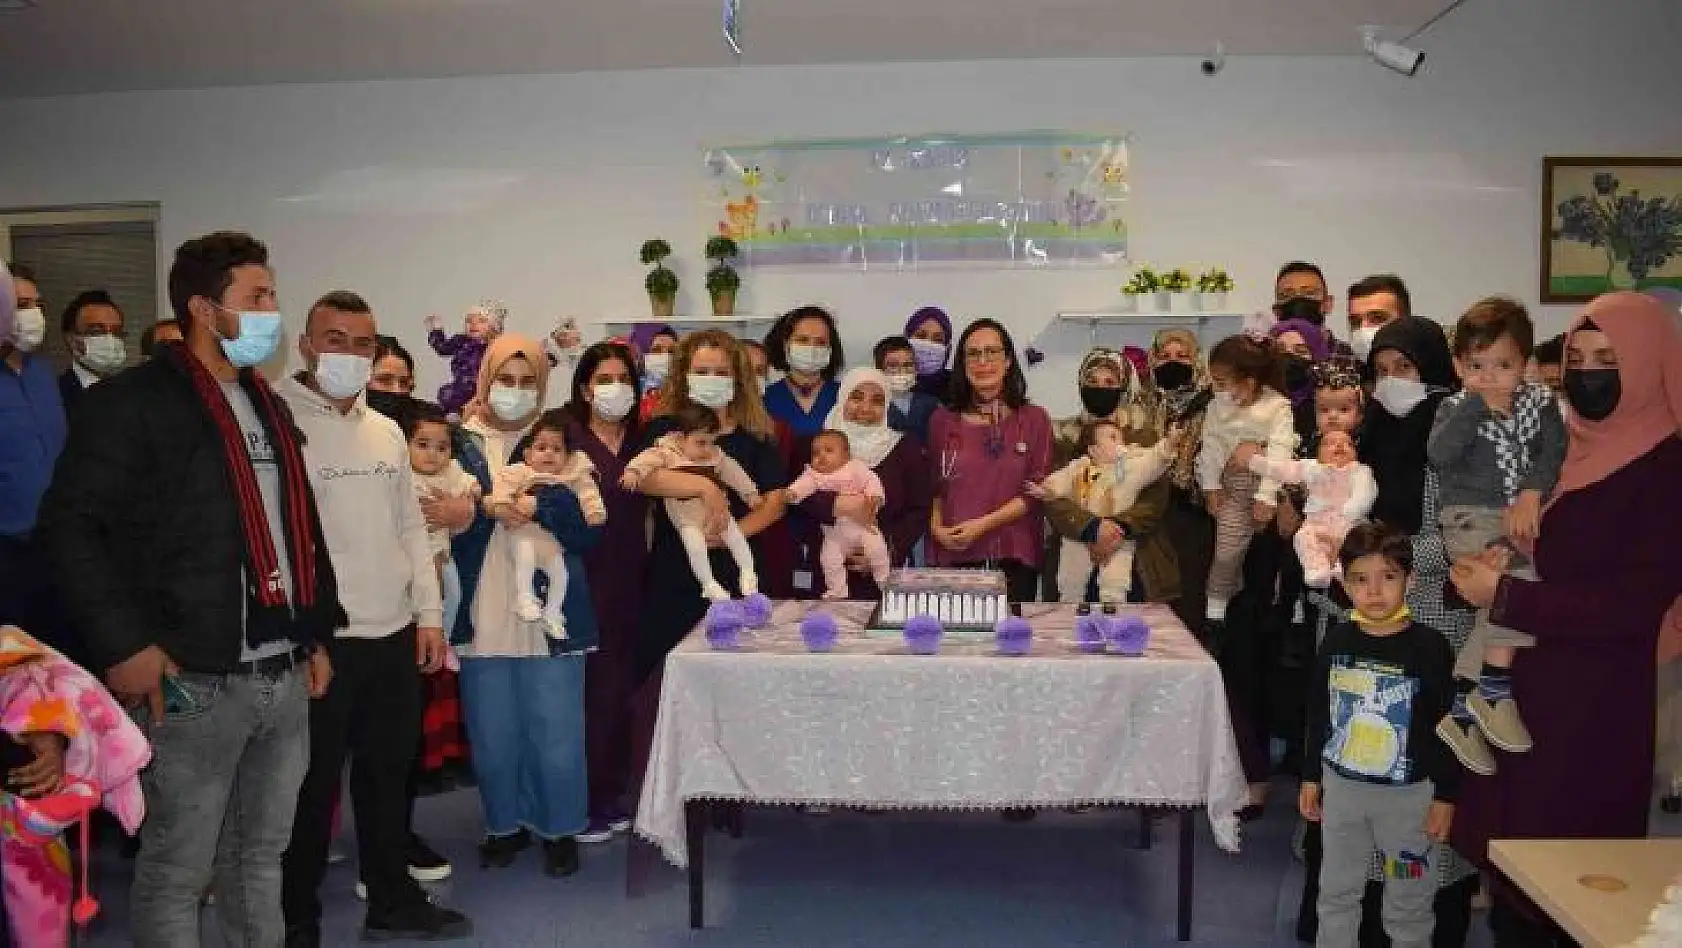 Malatya'da prematüre günü bebeklerle kutlandı